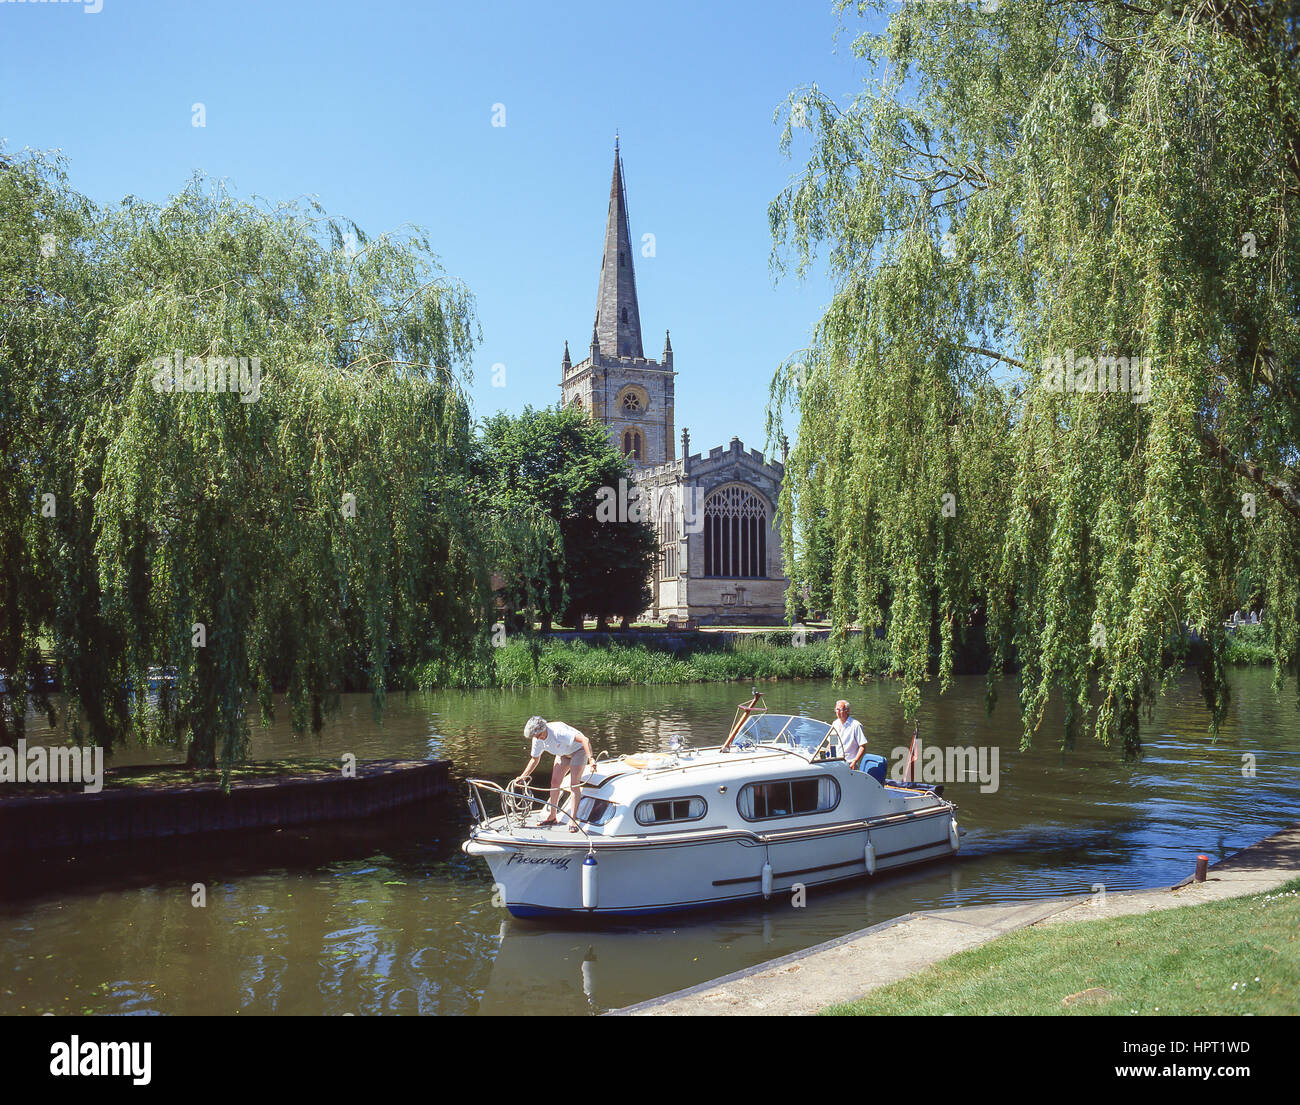 Bootfahren am Fluss Avon zeigt Holy Trinity Church, Stratford-upon-Avon, Warwickshire, England, Vereinigtes Königreich Stockfoto